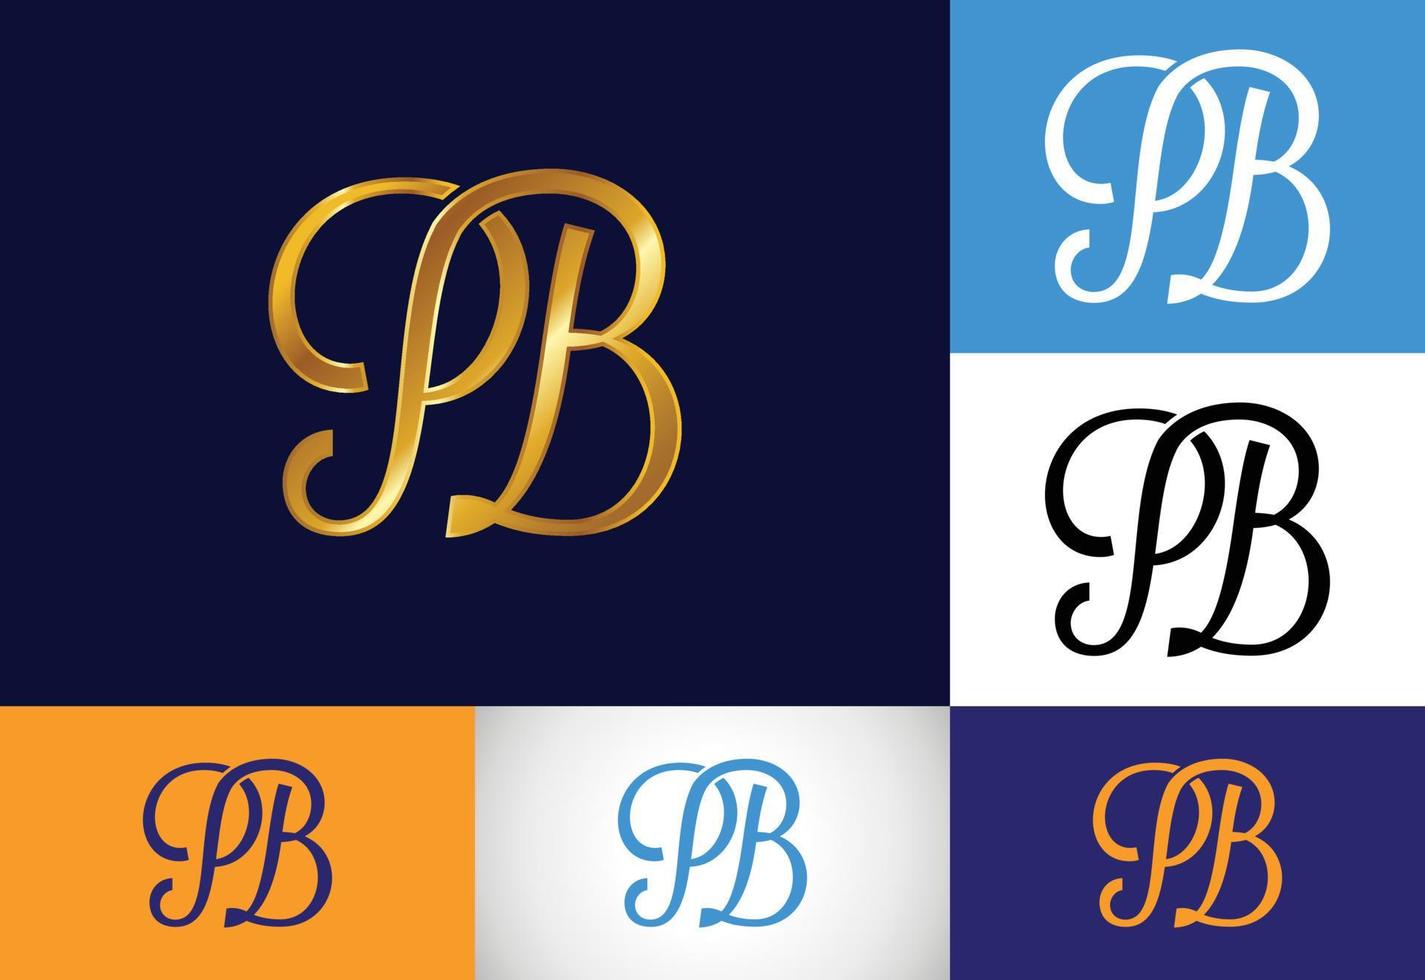 vetor de design de logotipo pb letra inicial. símbolo gráfico do alfabeto para identidade de negócios corporativos